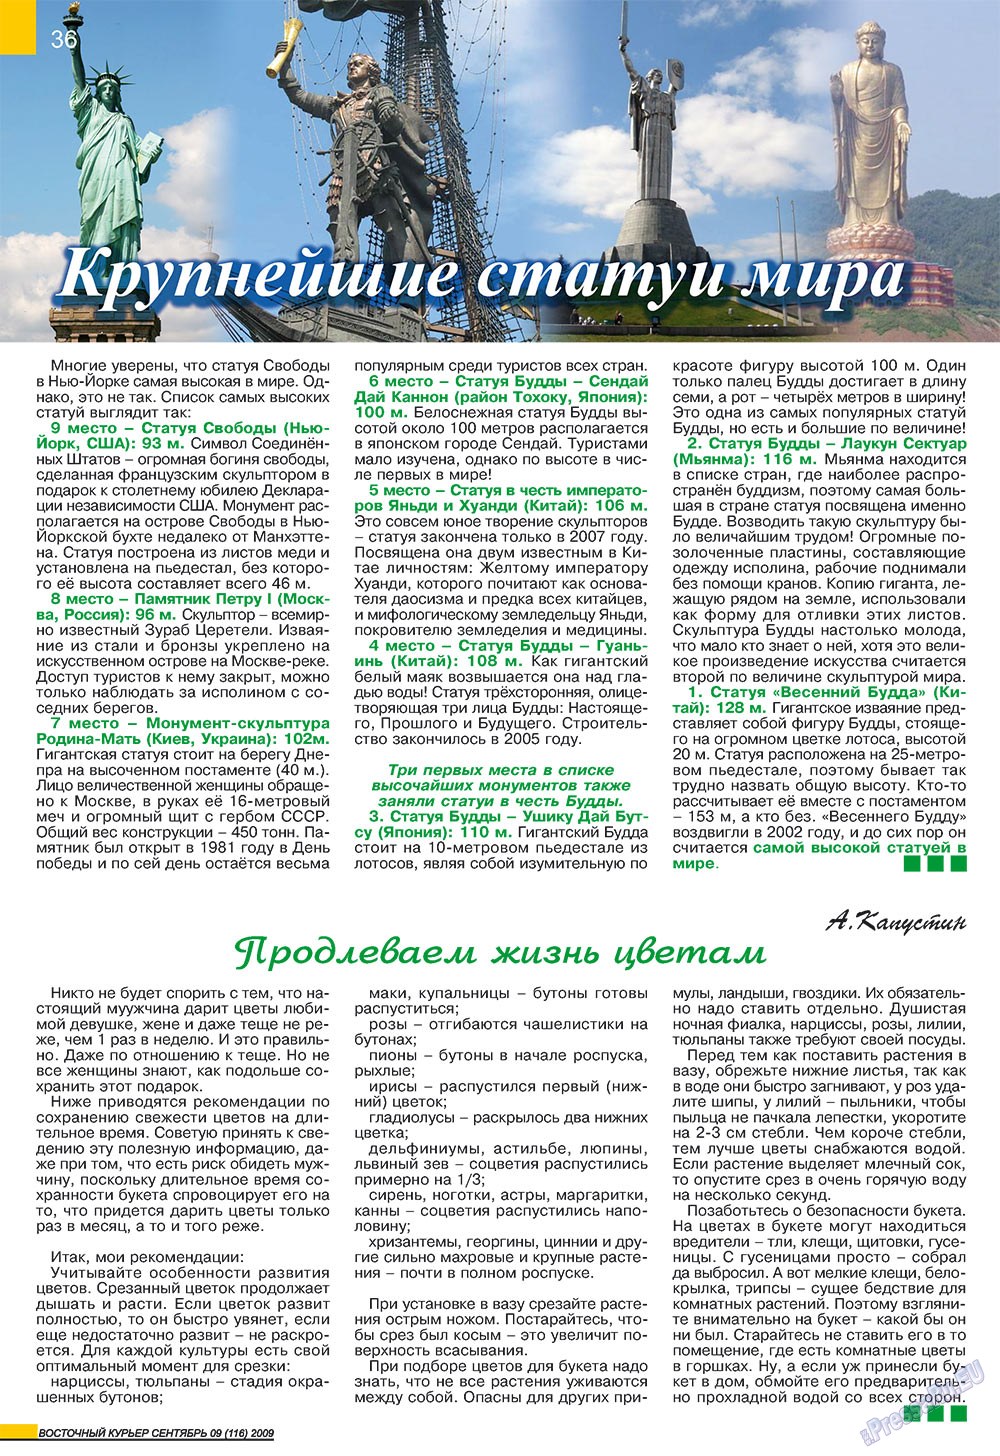 Восточный курьер (журнал). 2009 год, номер 9, стр. 36